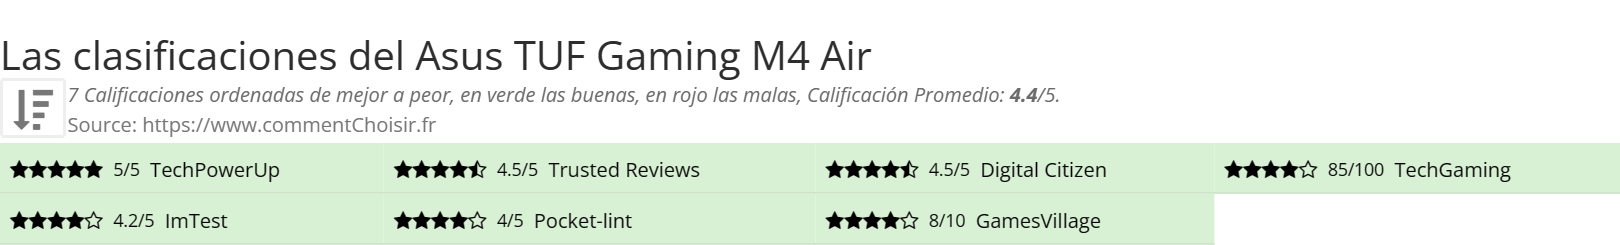 Ratings Asus TUF Gaming M4 Air